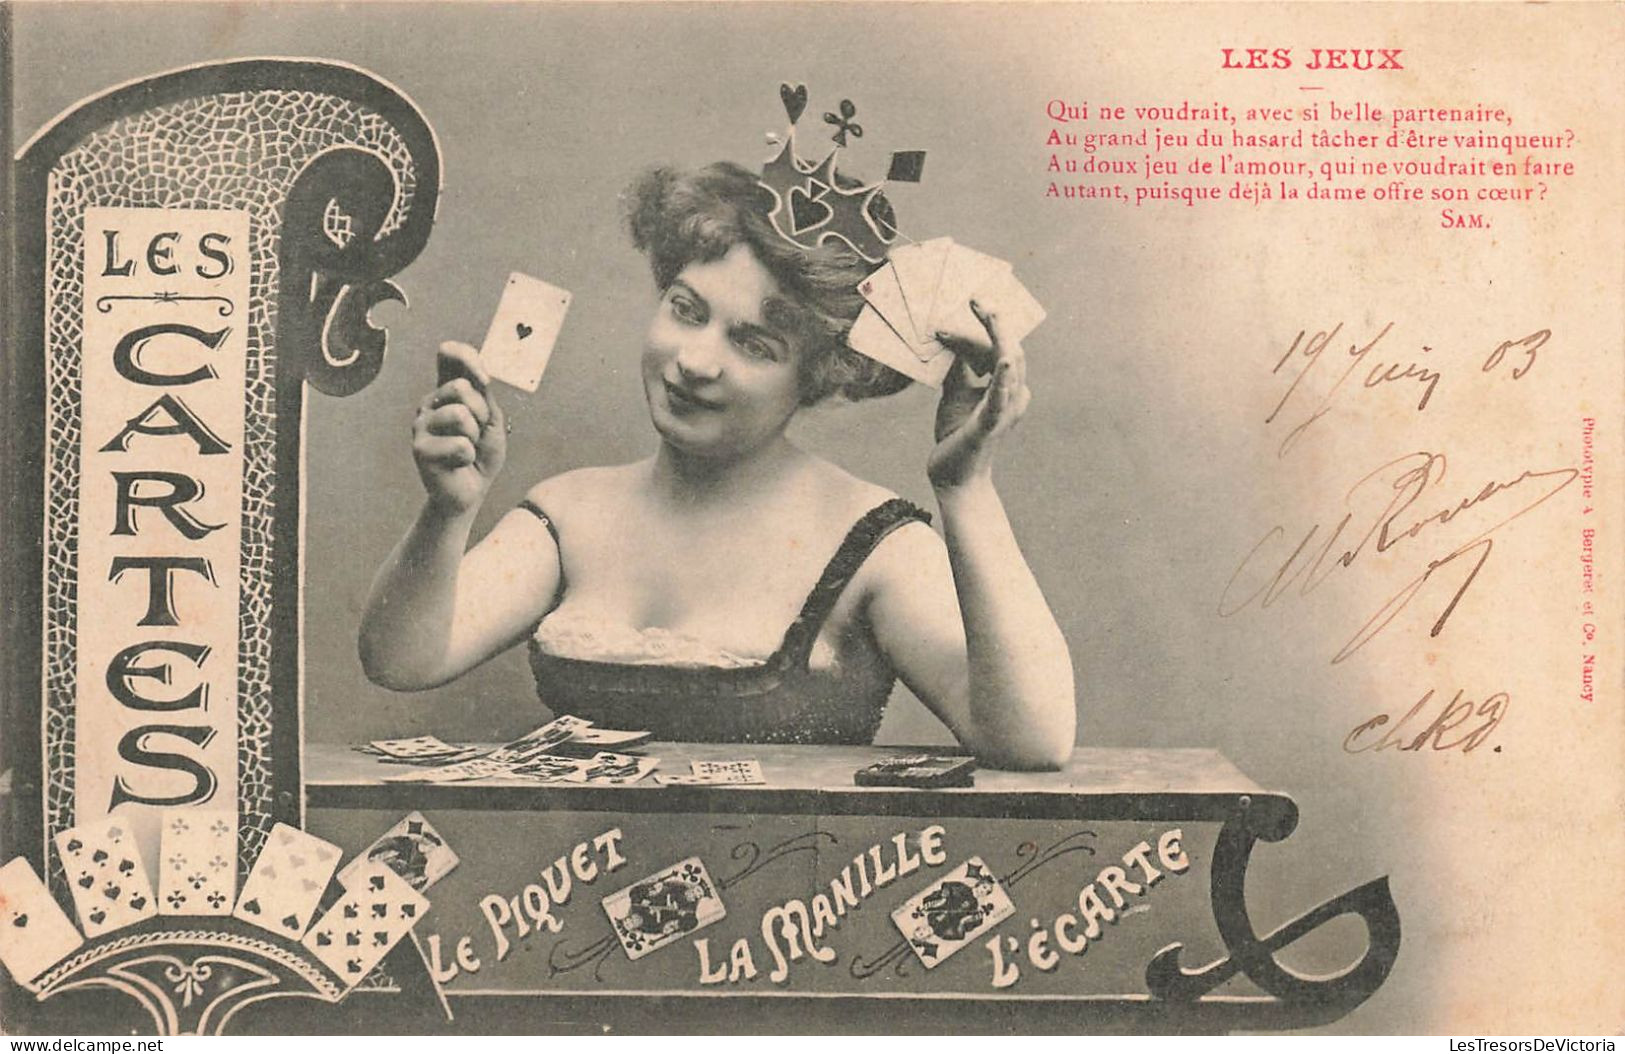 JEUX - Les Jeux - Les Cartes - Le Piquet - La Manille - L'Ecarte - Jeune Femme - Carte Postale Ancienne - Playing Cards